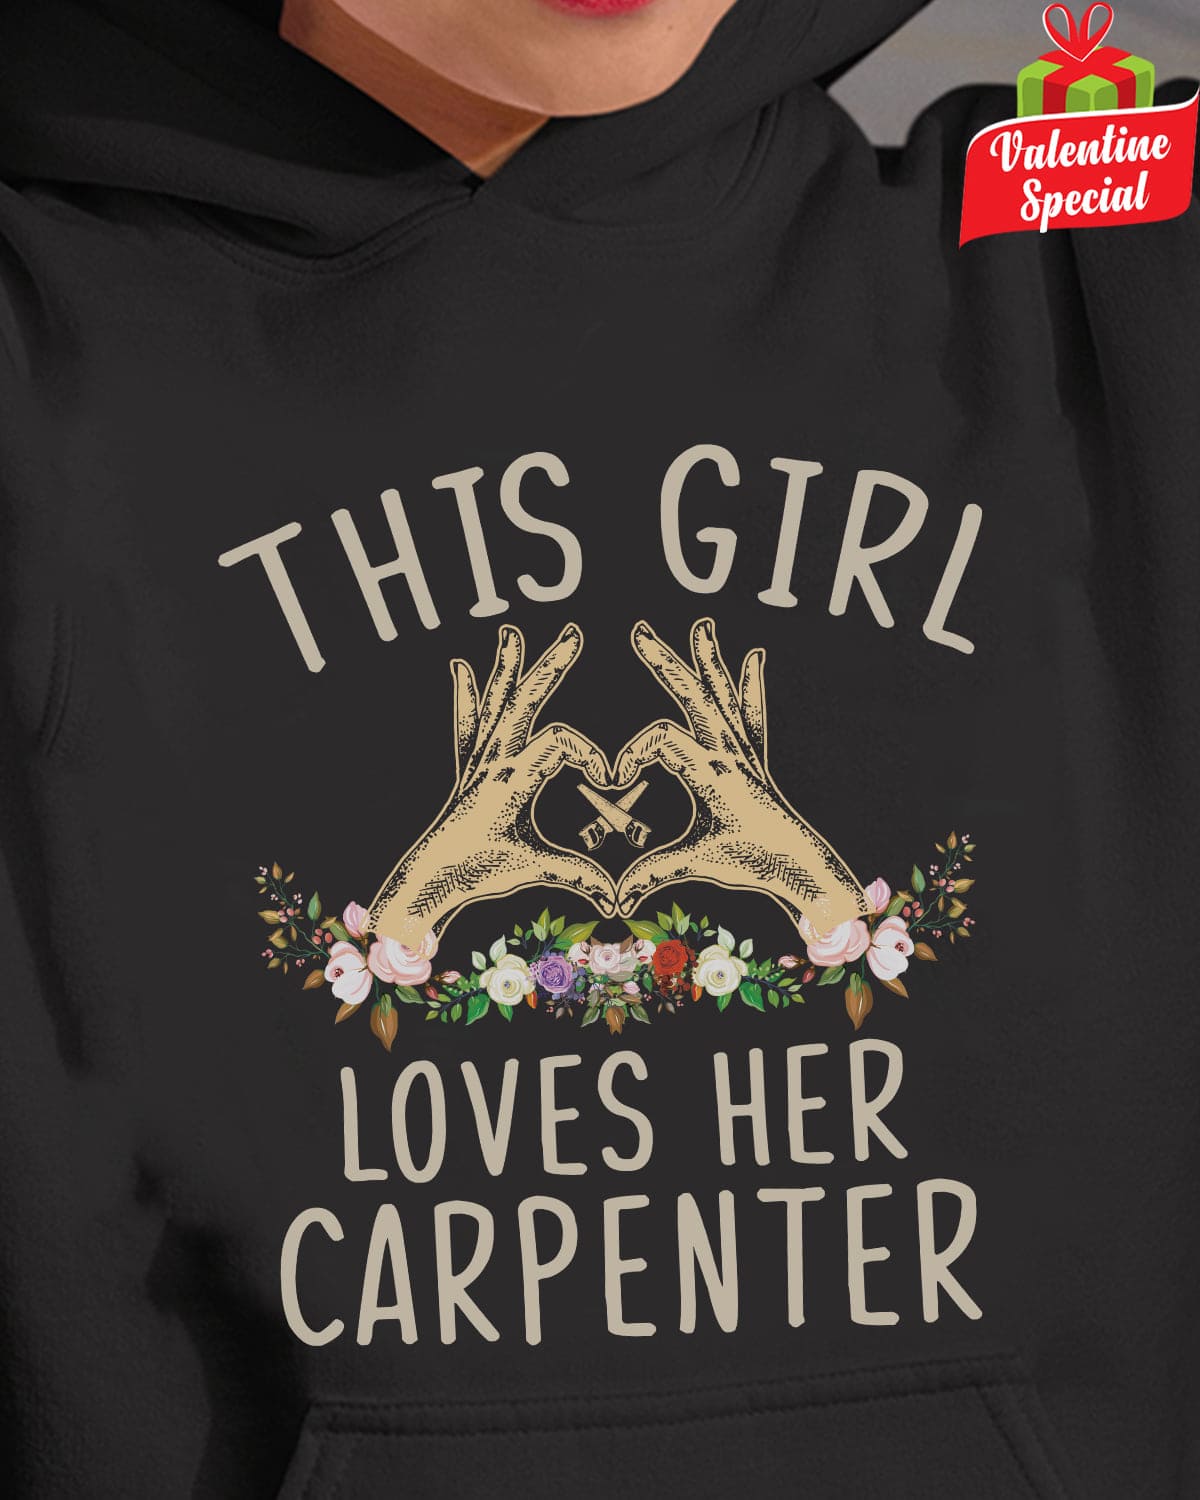 Love Carpenter - This girl loves her carpenter